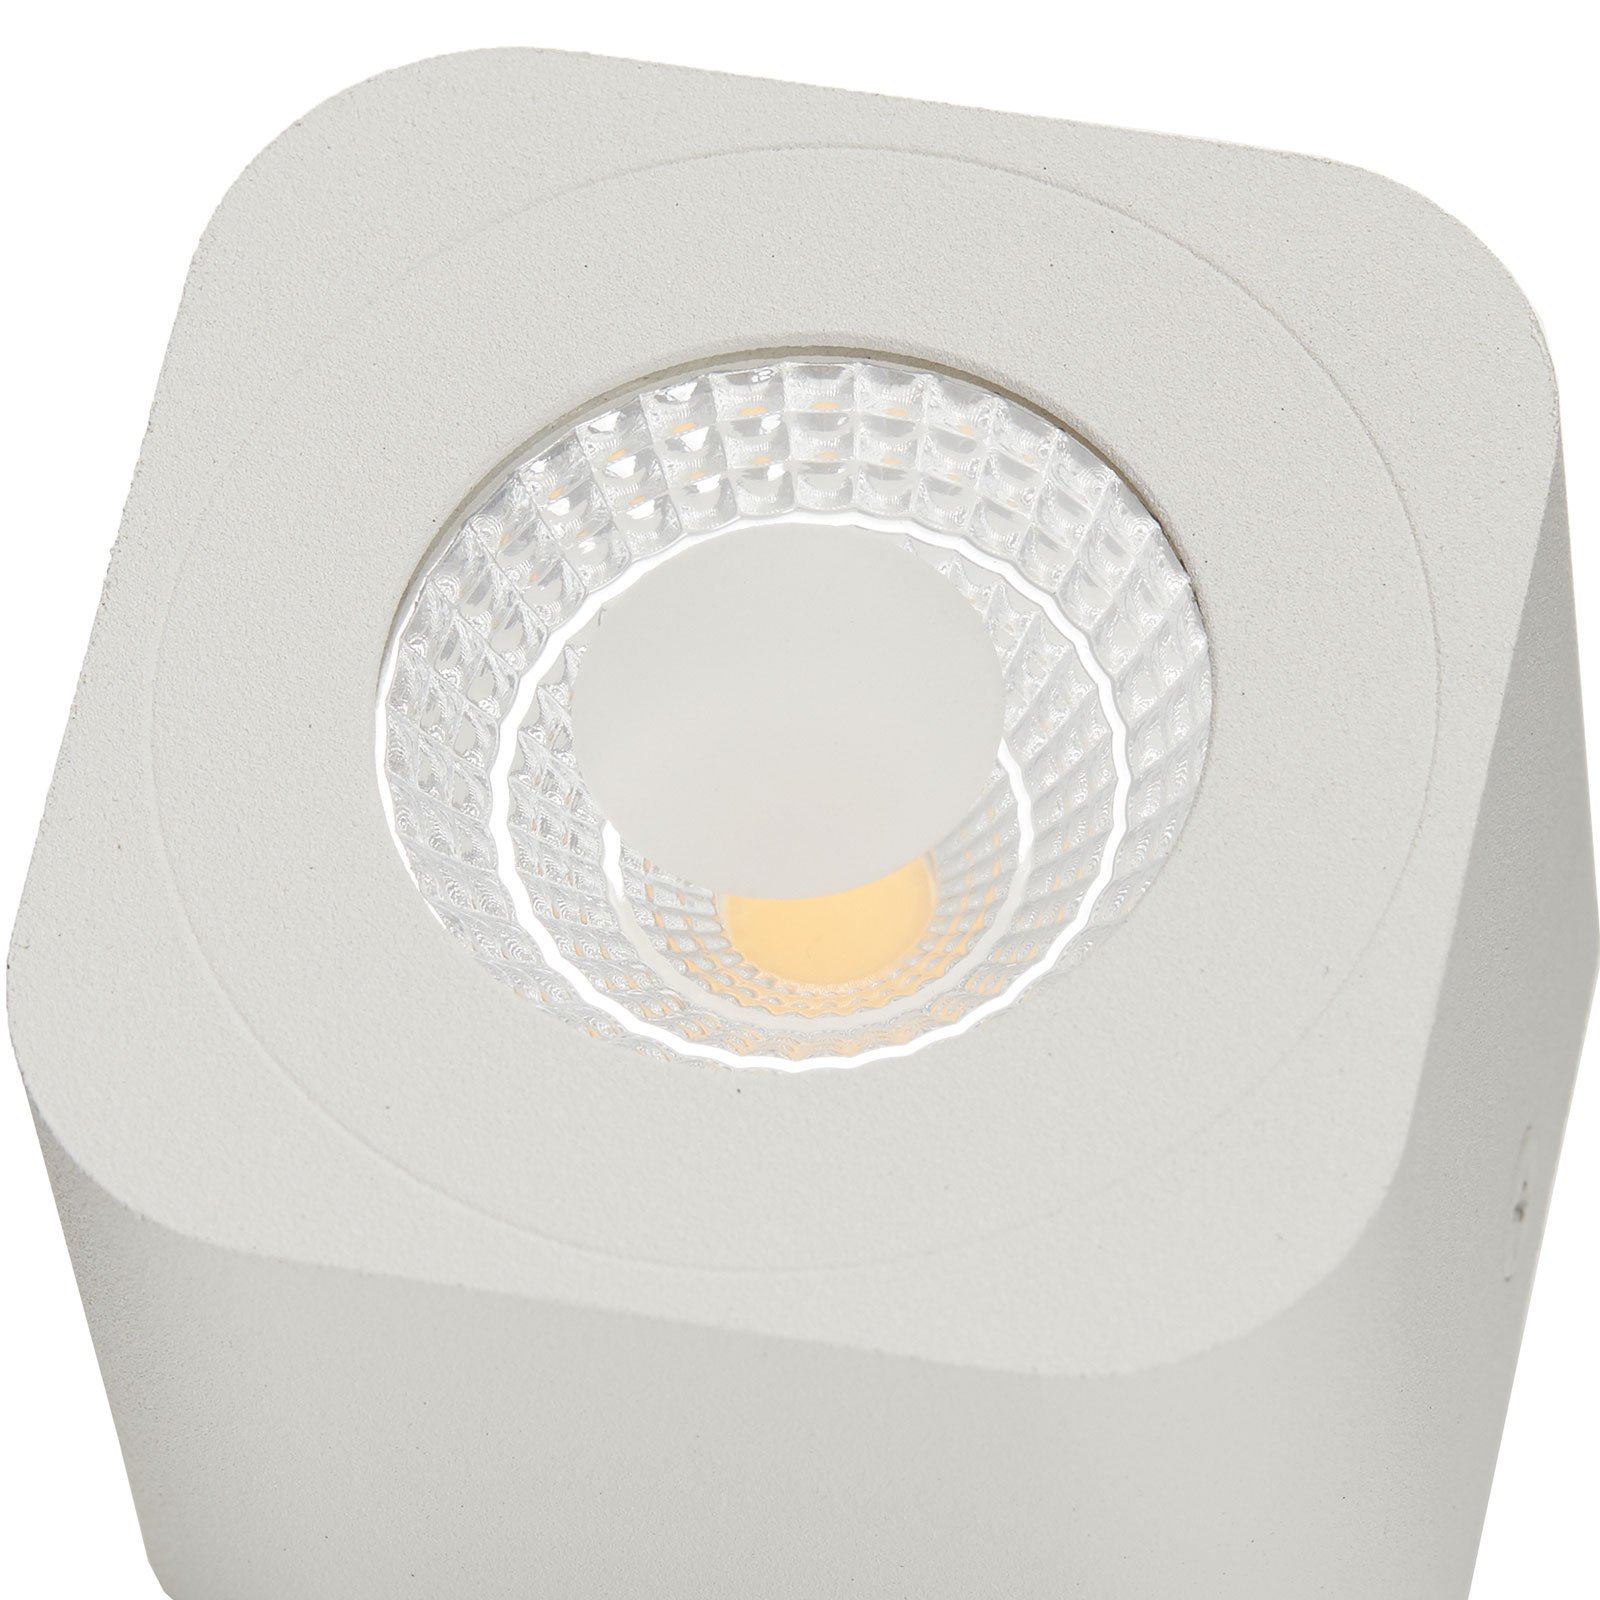 Square Palmi LED downlight in white